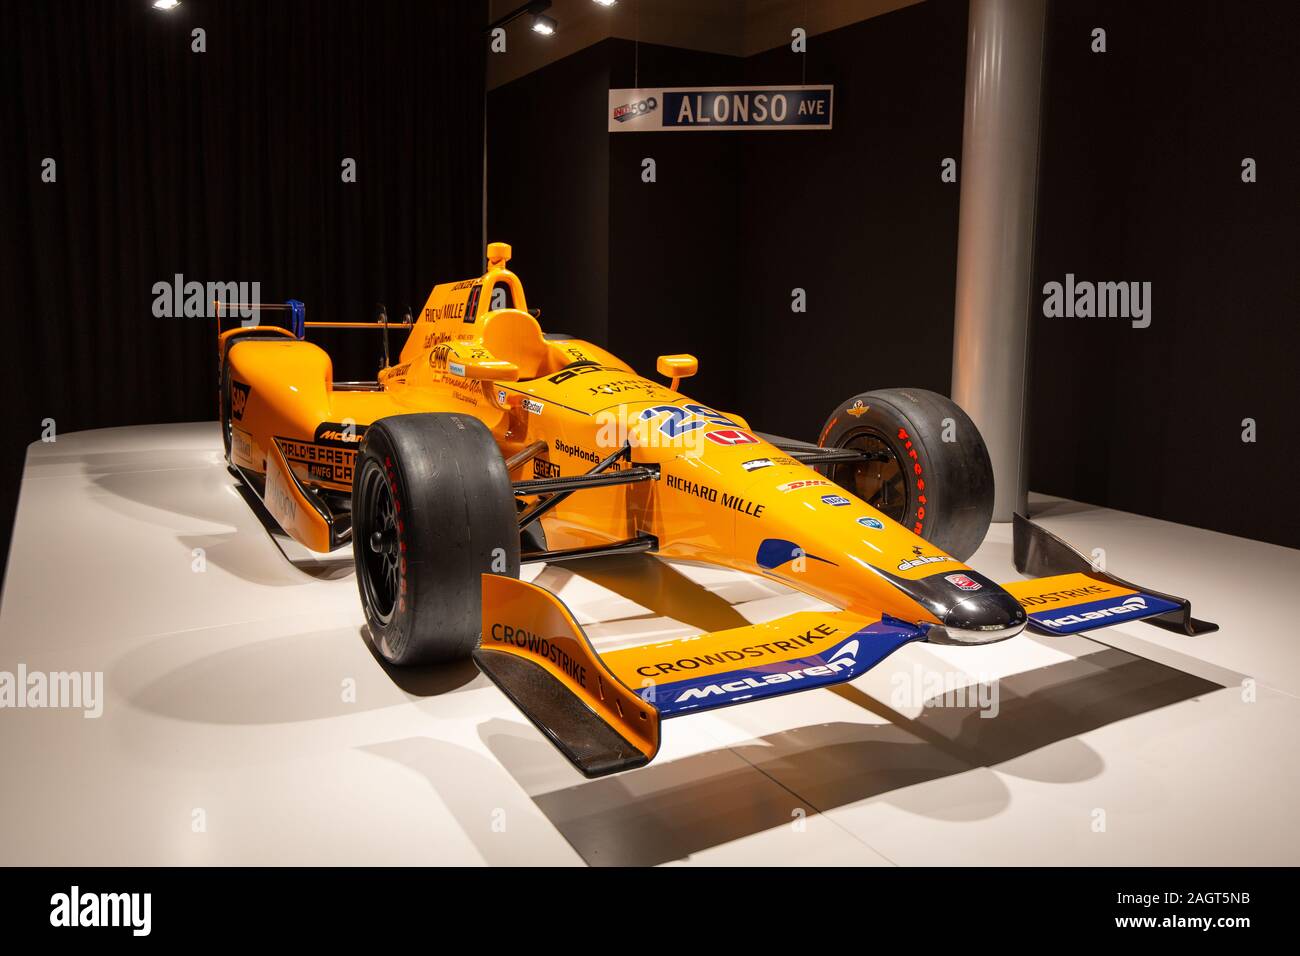 Fernando Alonso Museum, Llaneras, Spagna - 18 April, 2019: Fernando Alonso ha partecipato alla 500 Miglia di Indianapolis 2017 con questo McLaren-Honda- Foto Stock